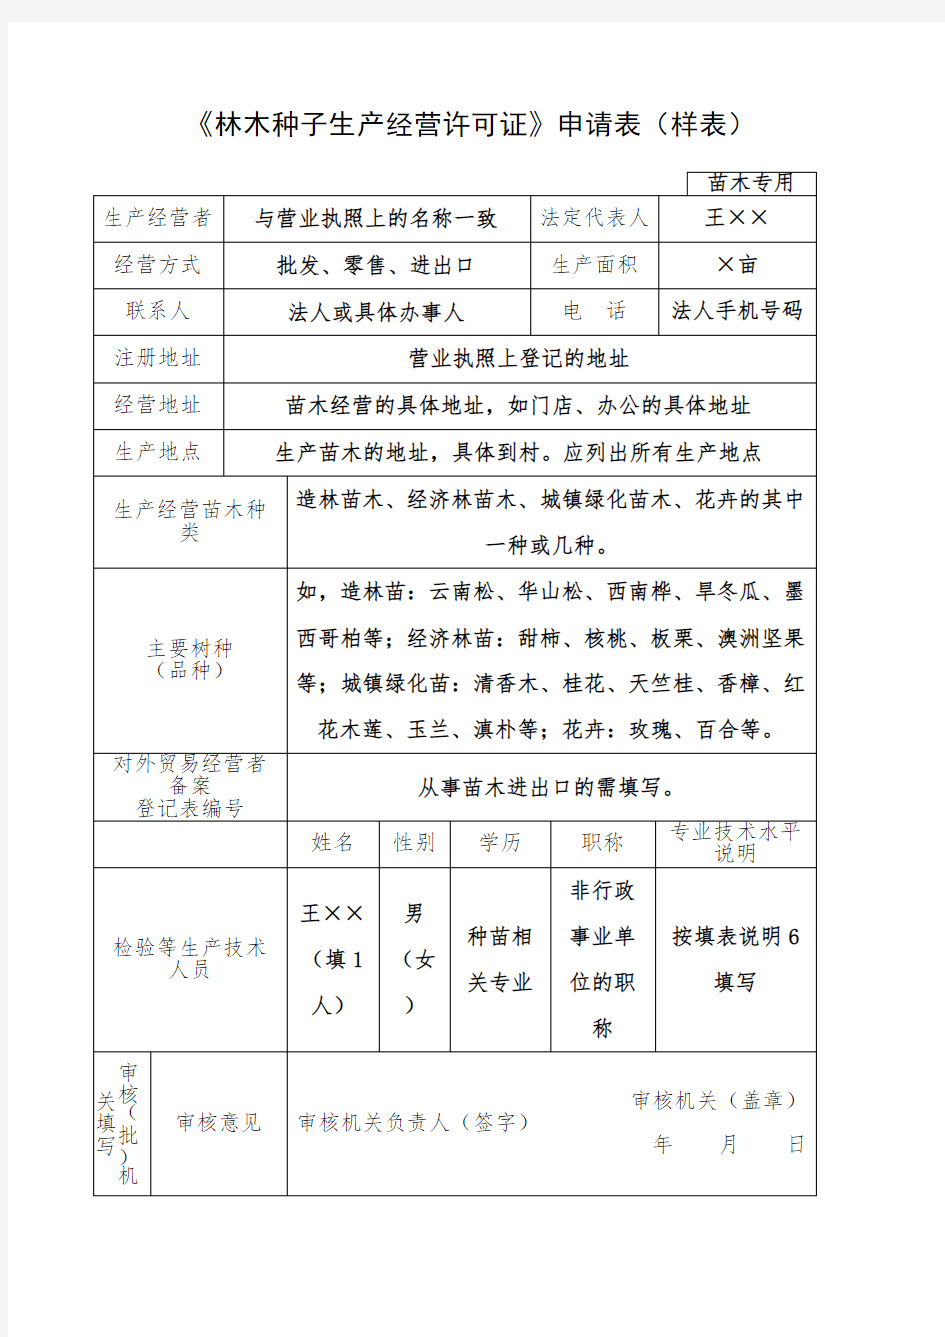 《林木种子生产经营许可证》申请表 样表 